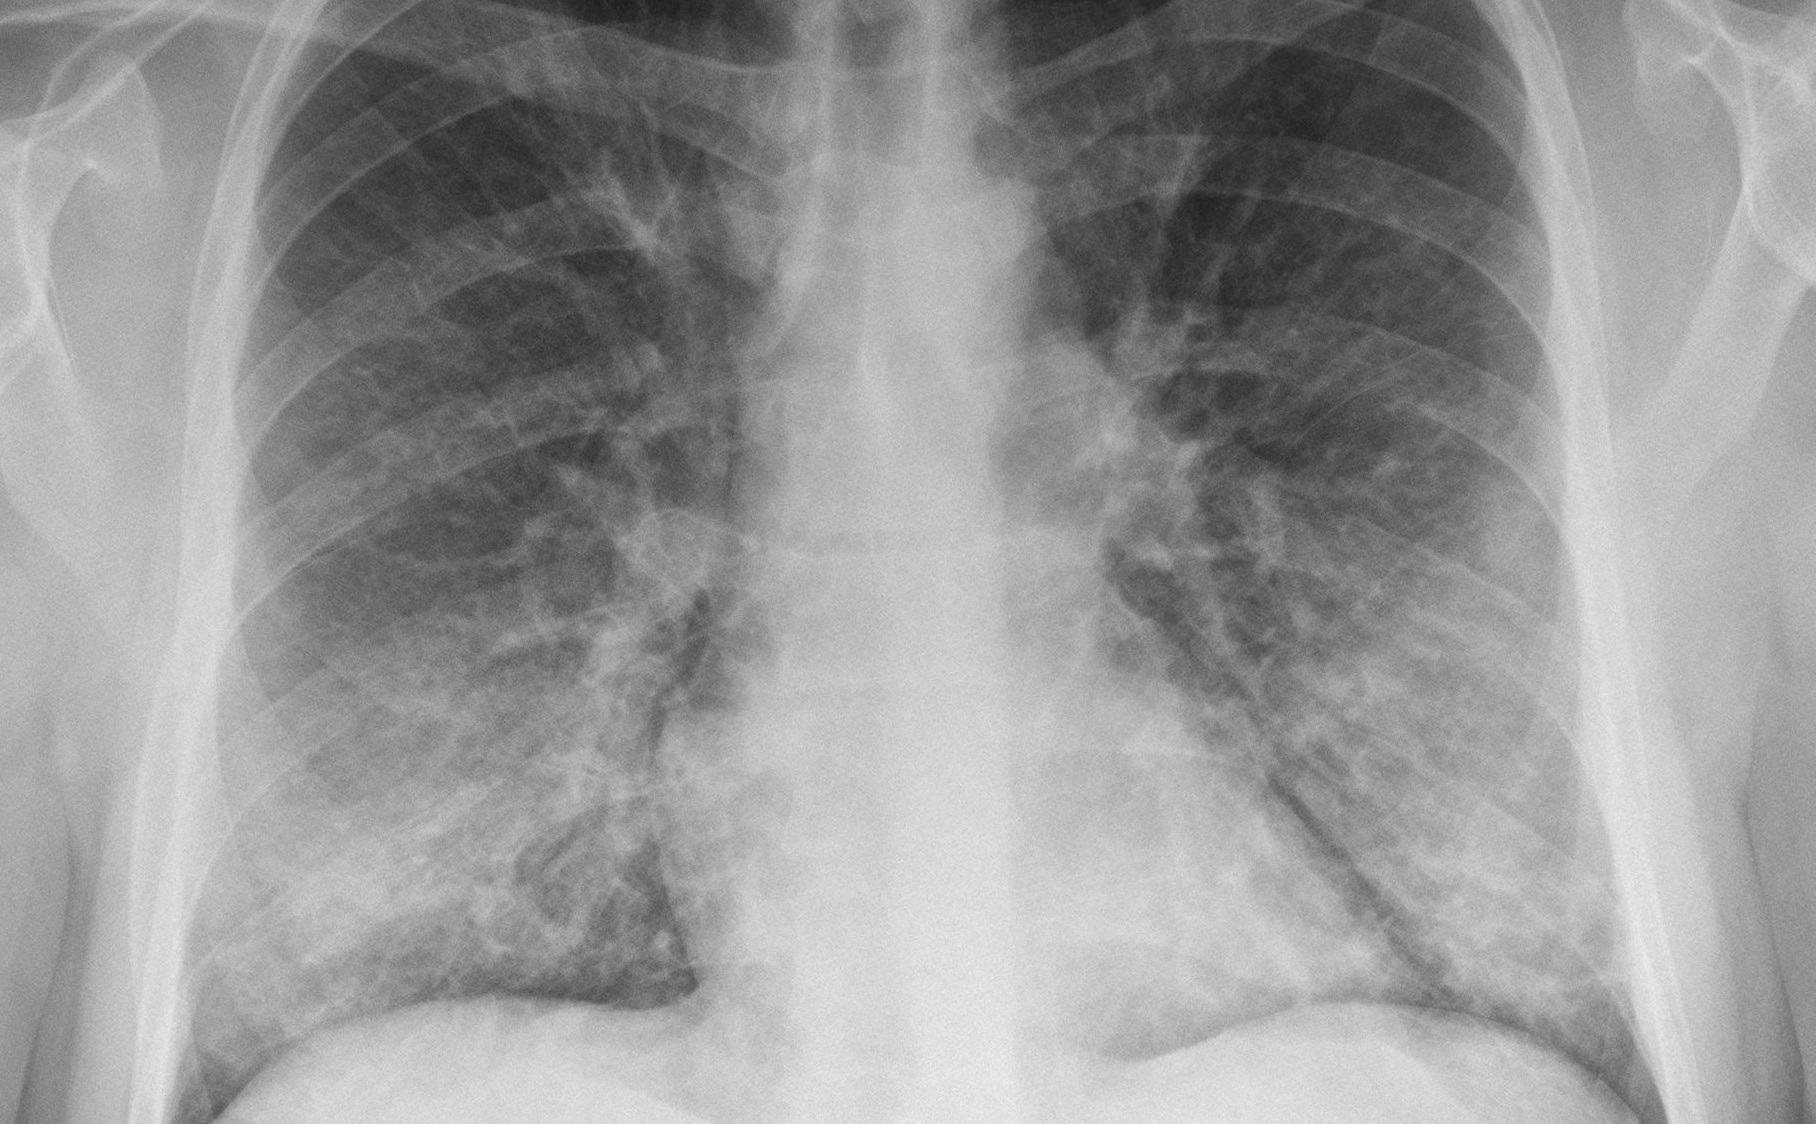 Descubren una nueva grave enfermedad pulmonar vinculada al vaping